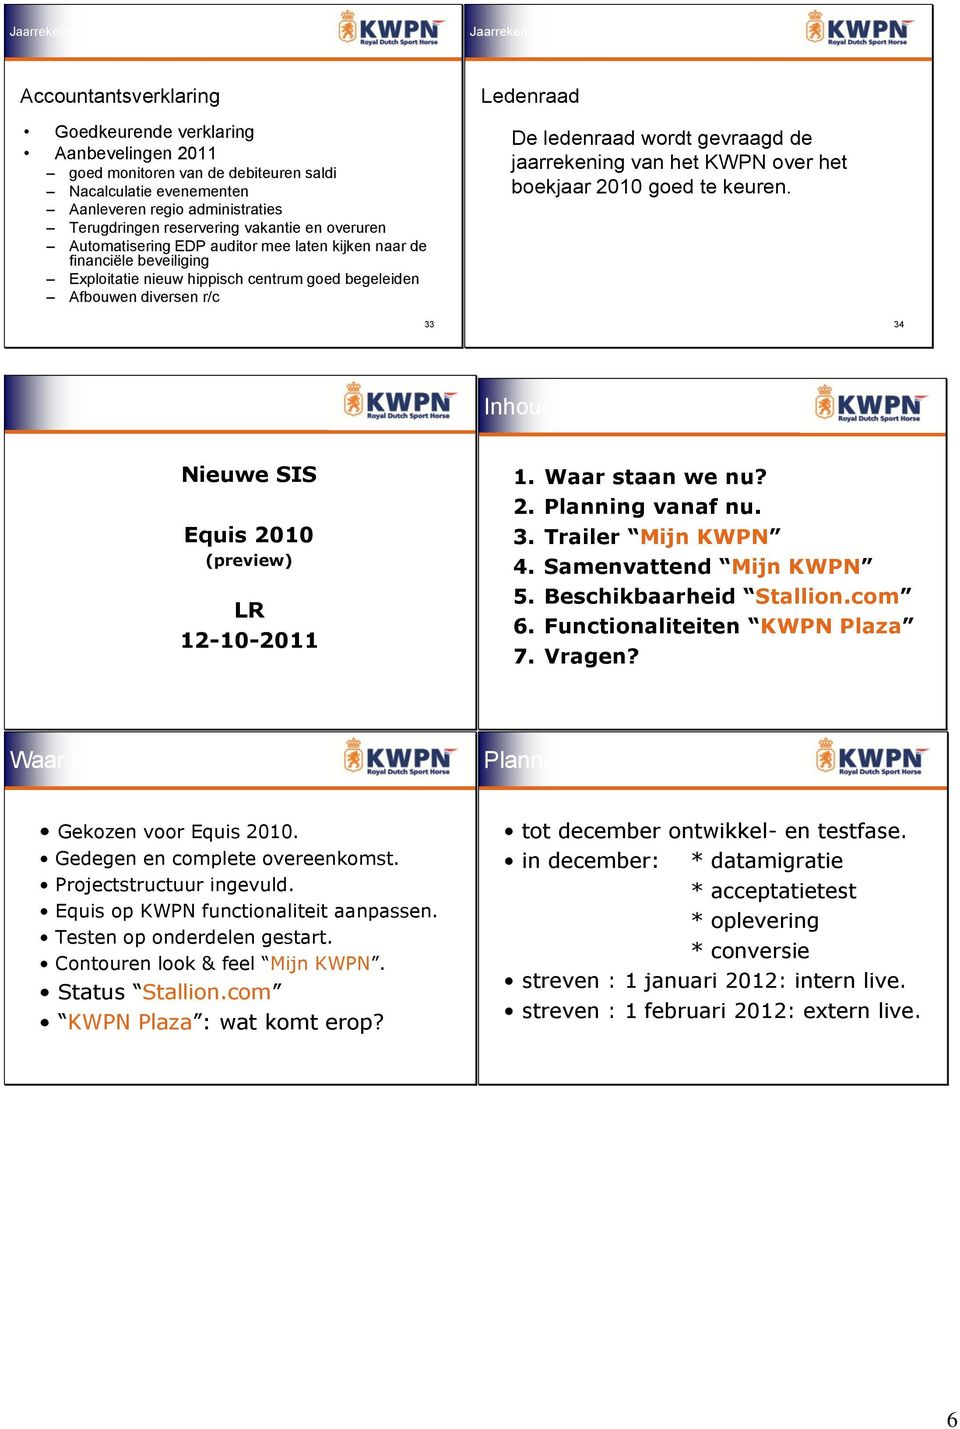 jaarrekening van het KWPN over het boekjaar 2010 goed te keuren. 33 34 Inhoud: Nieuwe SIS Equis 2010 (preview) LR 12-10-2011 1. Waar staan we nu? 2. Planning vanaf nu. 3. Trailer Mijn KWPN 4.